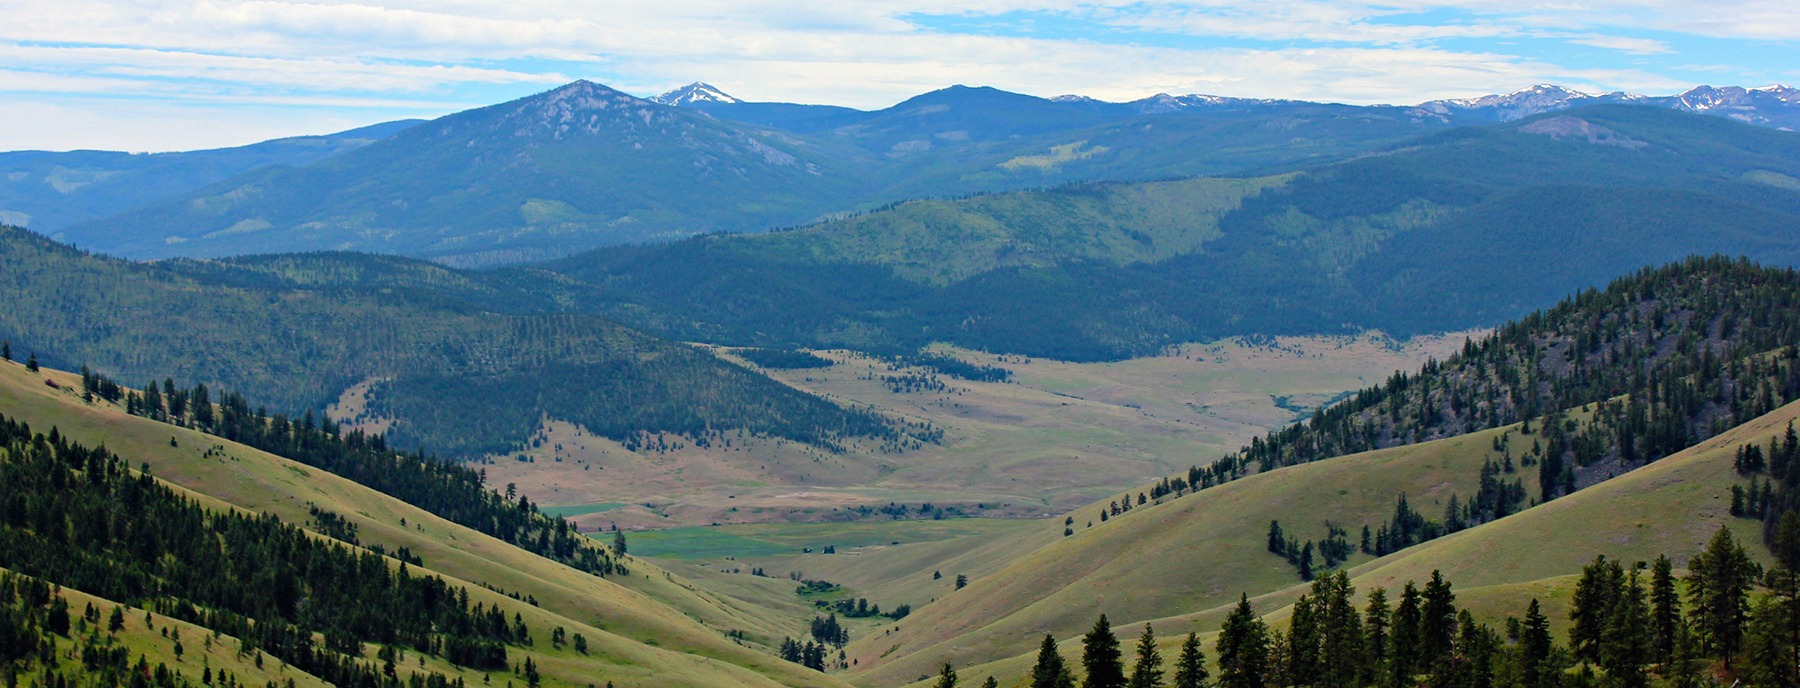 Montana Wilderness Association - Wilderness Walks